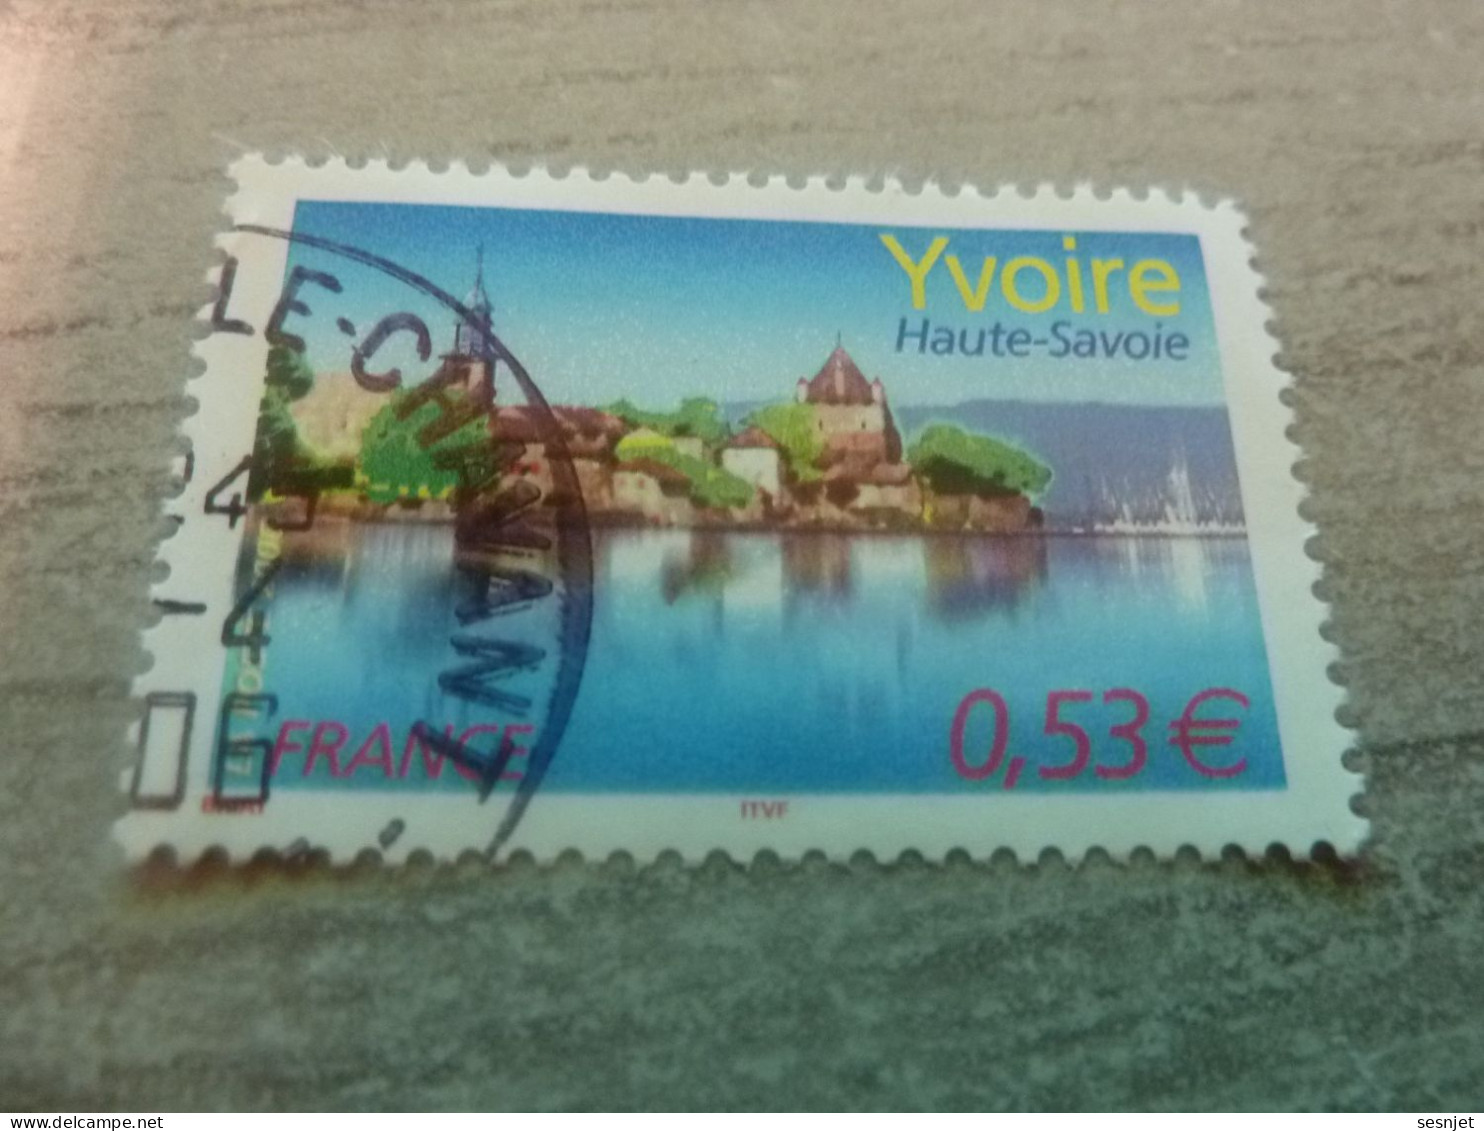 Yvoire - Lac Léman (Haute-Savoie) - 0.53€ - Yt 3892 - Multicolore - Oblitéré - Année 2006 - - Gebraucht